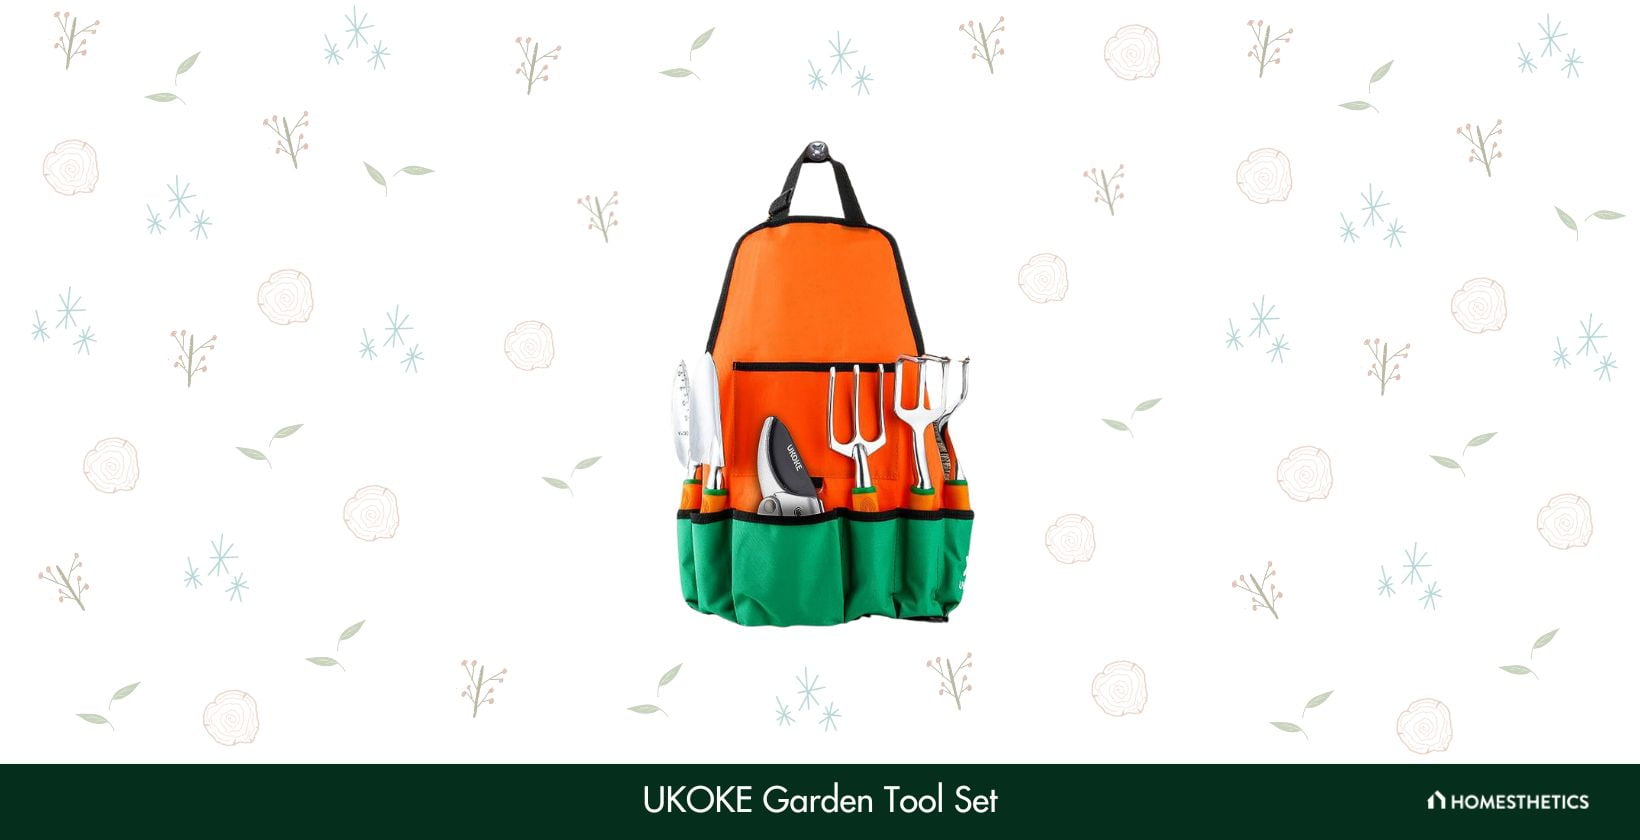 UKOKE Garden Tool Set